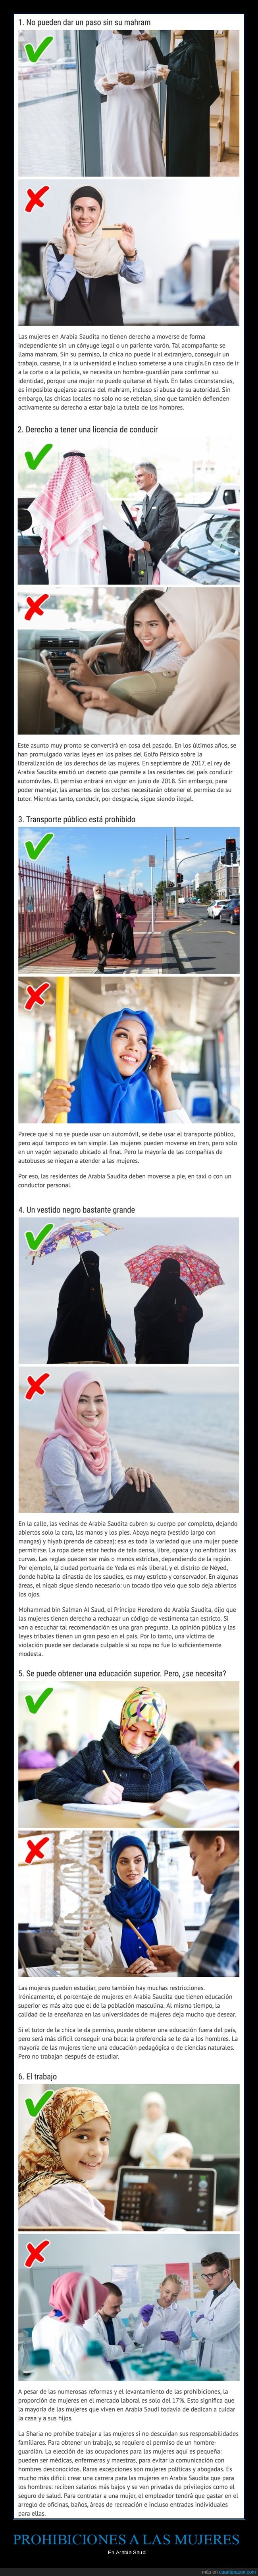 arabia saudí,prohibiciones,mujeres